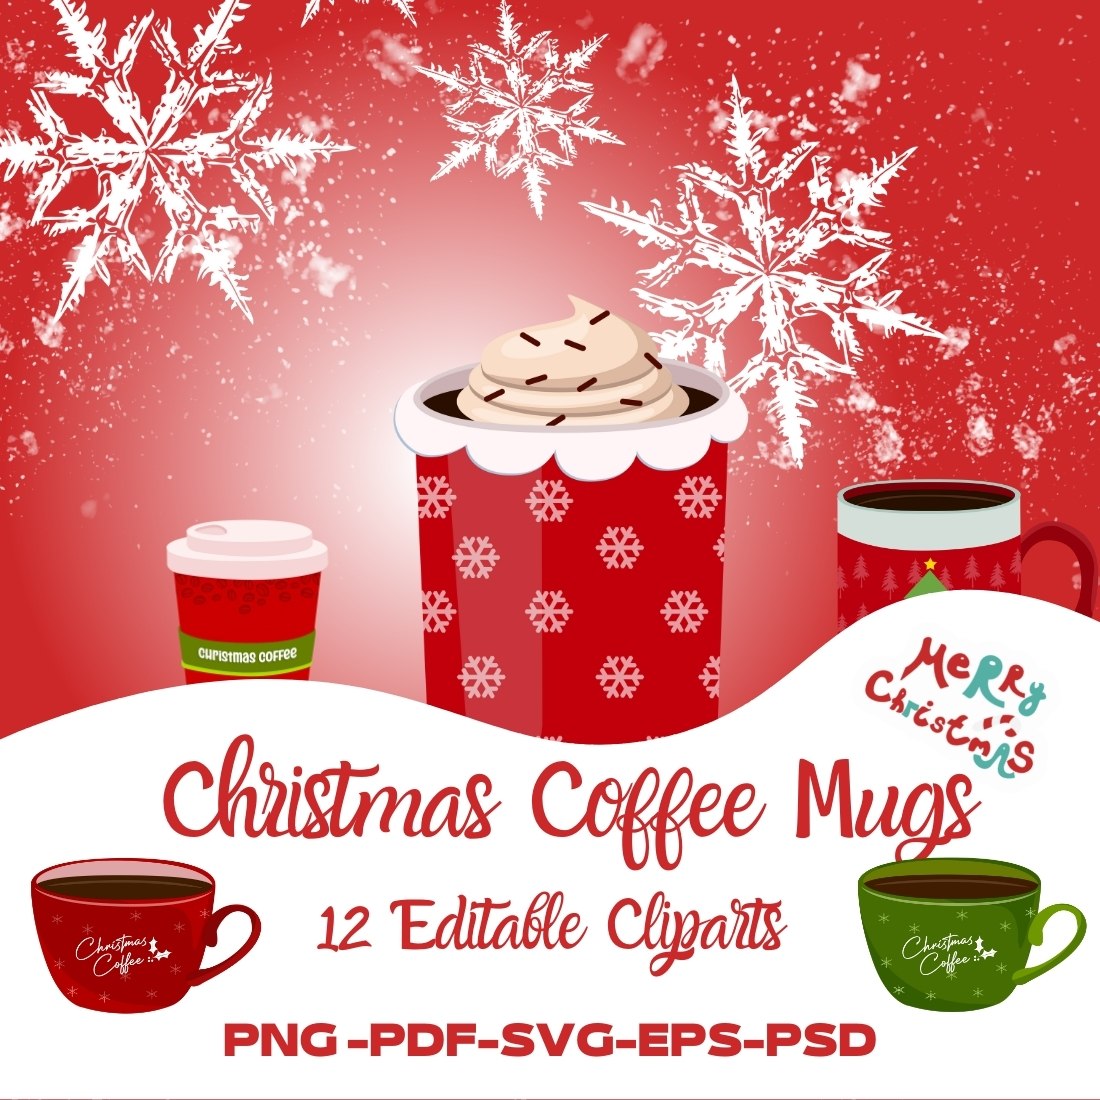 Christmas Coffee Mugs 12 Editable Designs cover image.